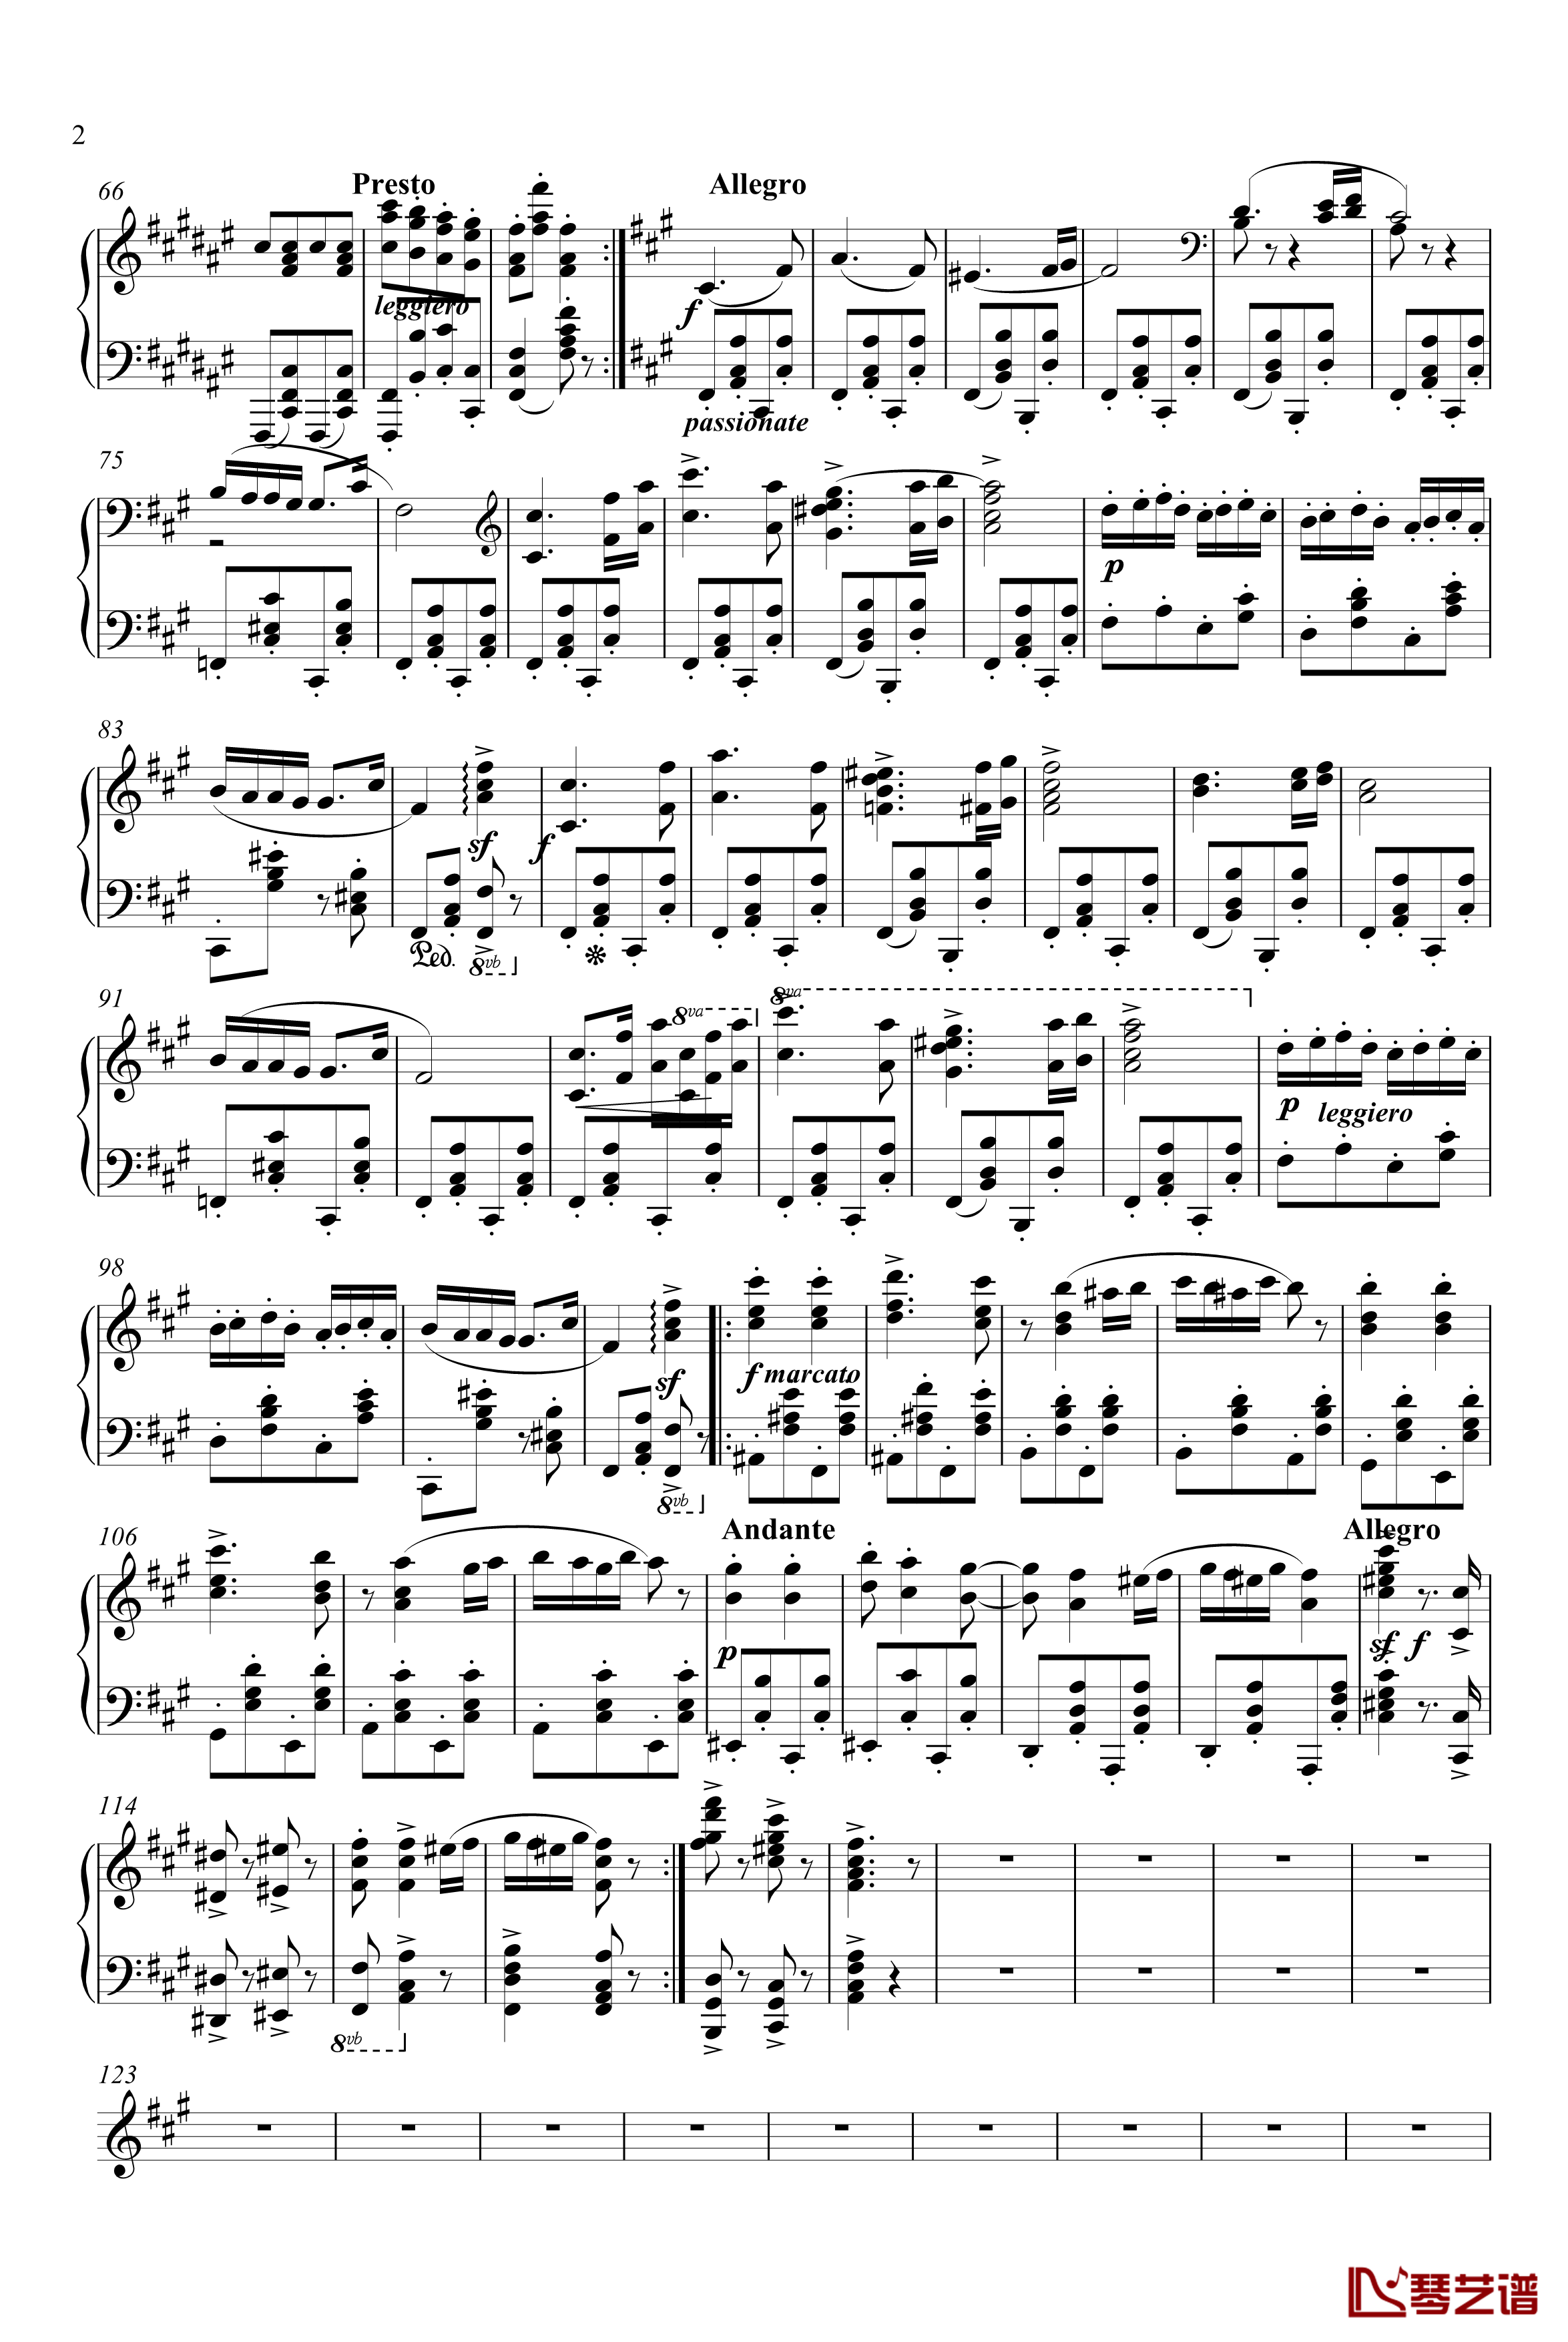 匈牙利舞曲第五号钢琴钢琴谱-独奏版-勃拉姆斯-Brahms2